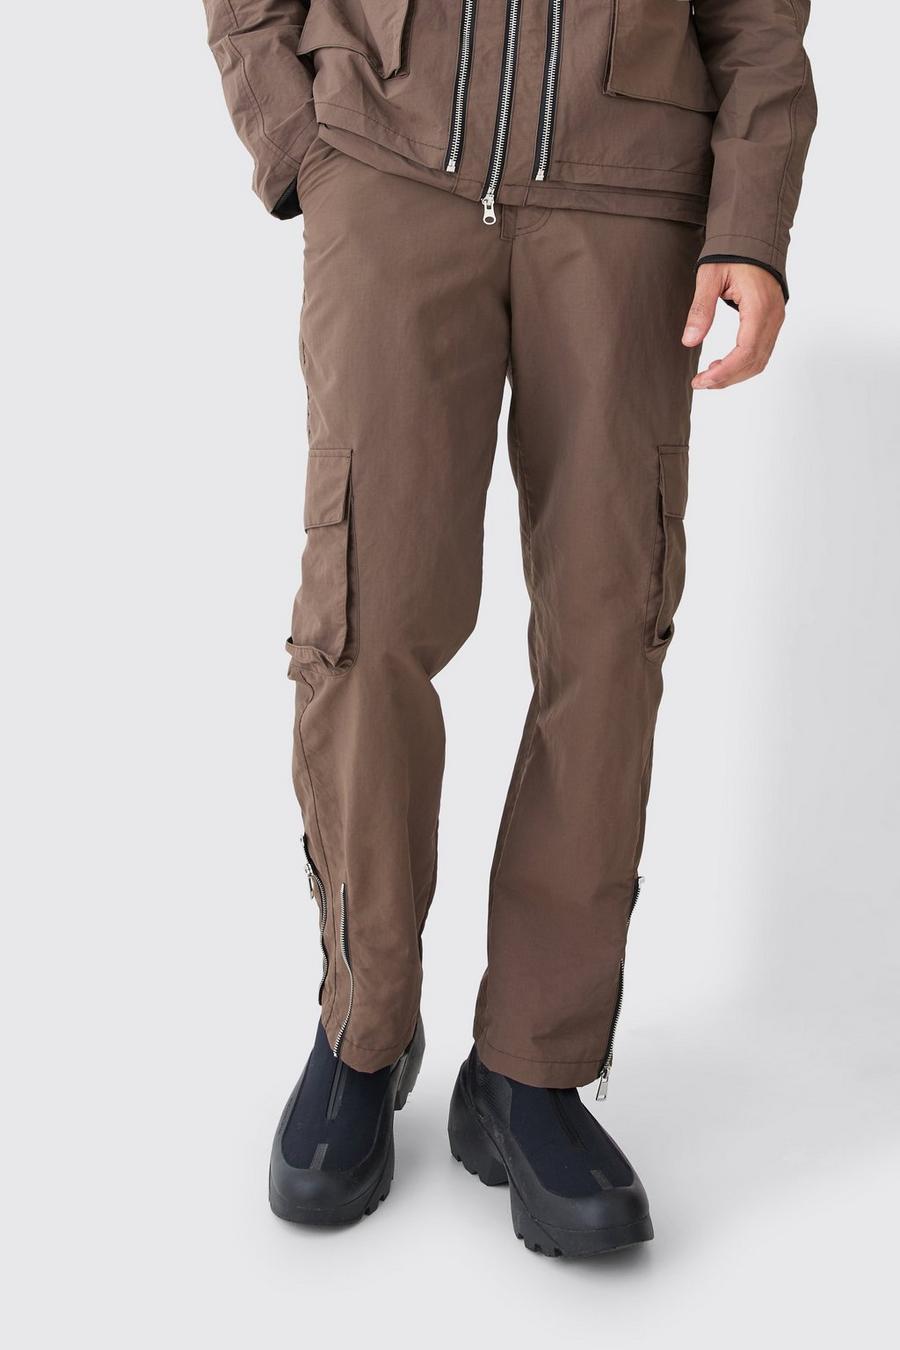 Pantalon cargo taille fixe en nylon, Khaki